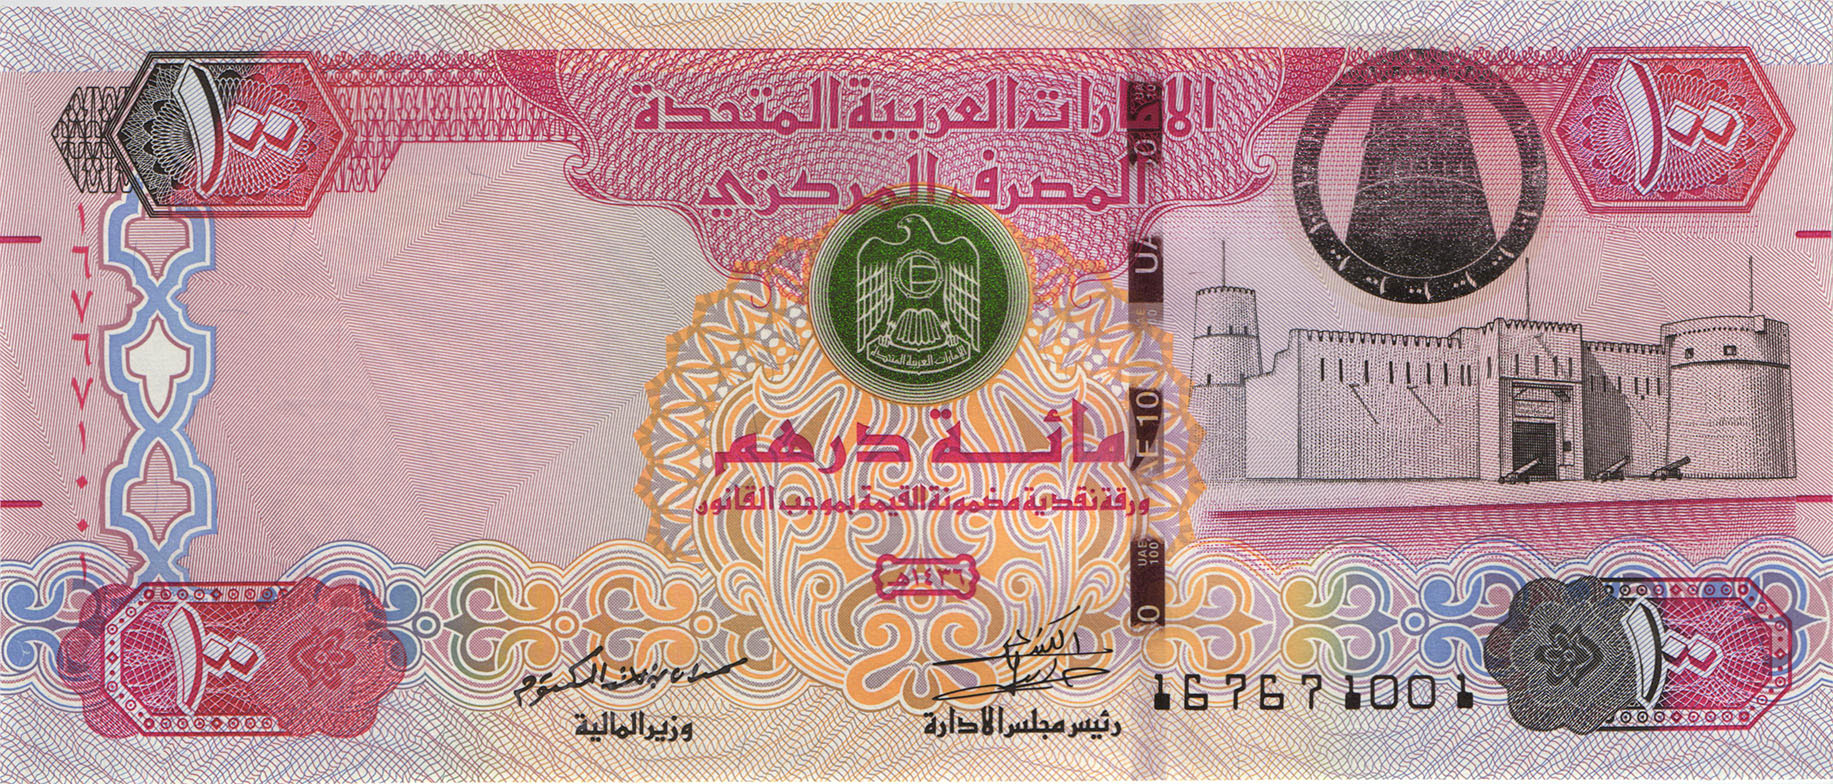 Купить дирхамы в нижнем. Банкноты United arab Emirates,2008, 50 dirhams. 100 Дирхам ОАЭ. Дирхам ОАЭ бонны. Монета Объединённых арабских Эмиратов 100.